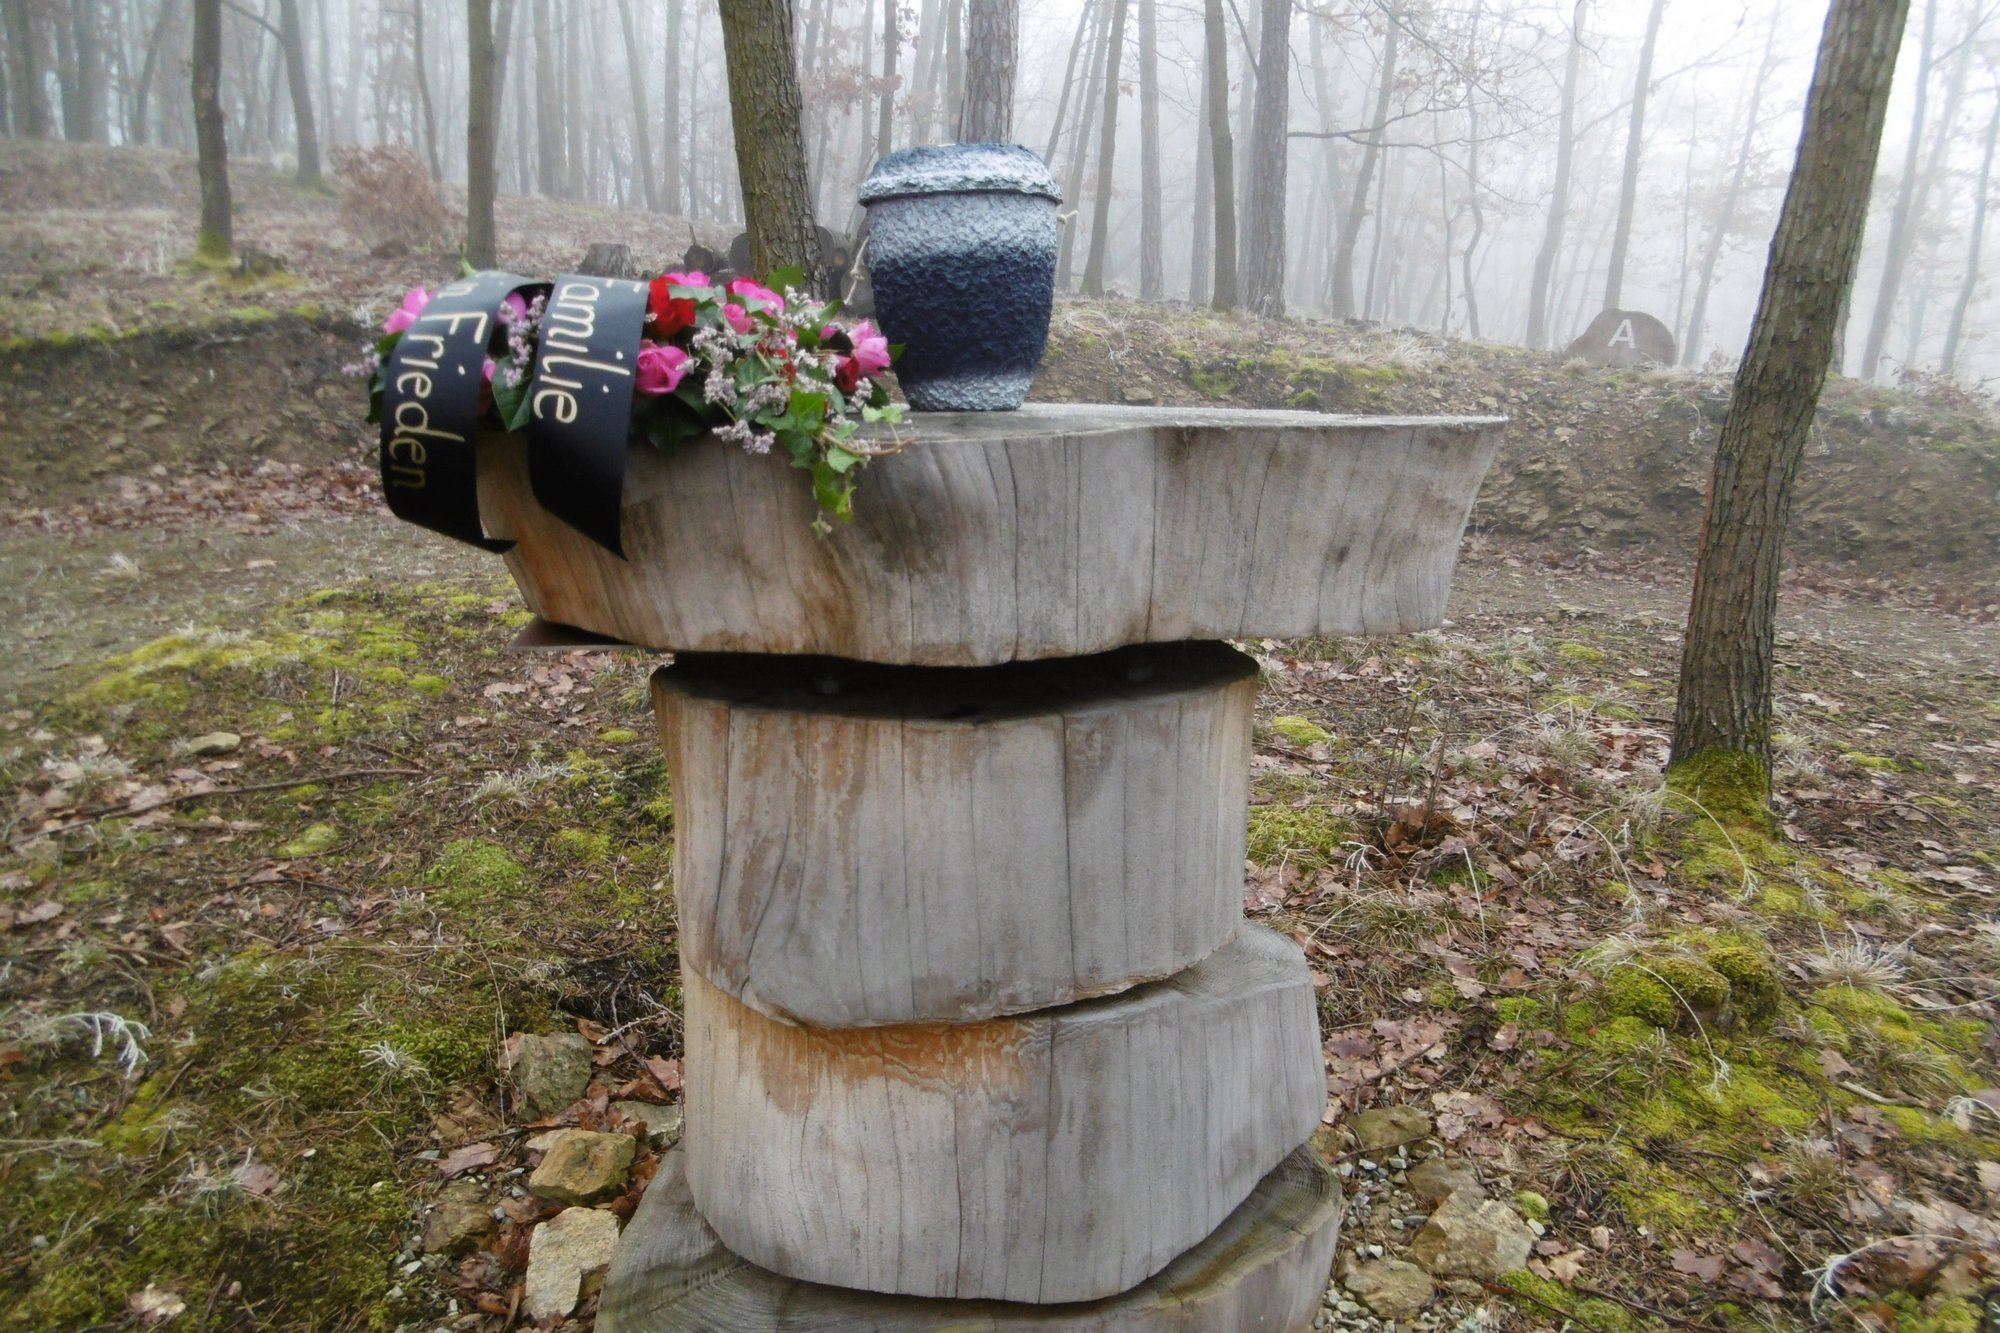 Urne auf Holztisch im Wald